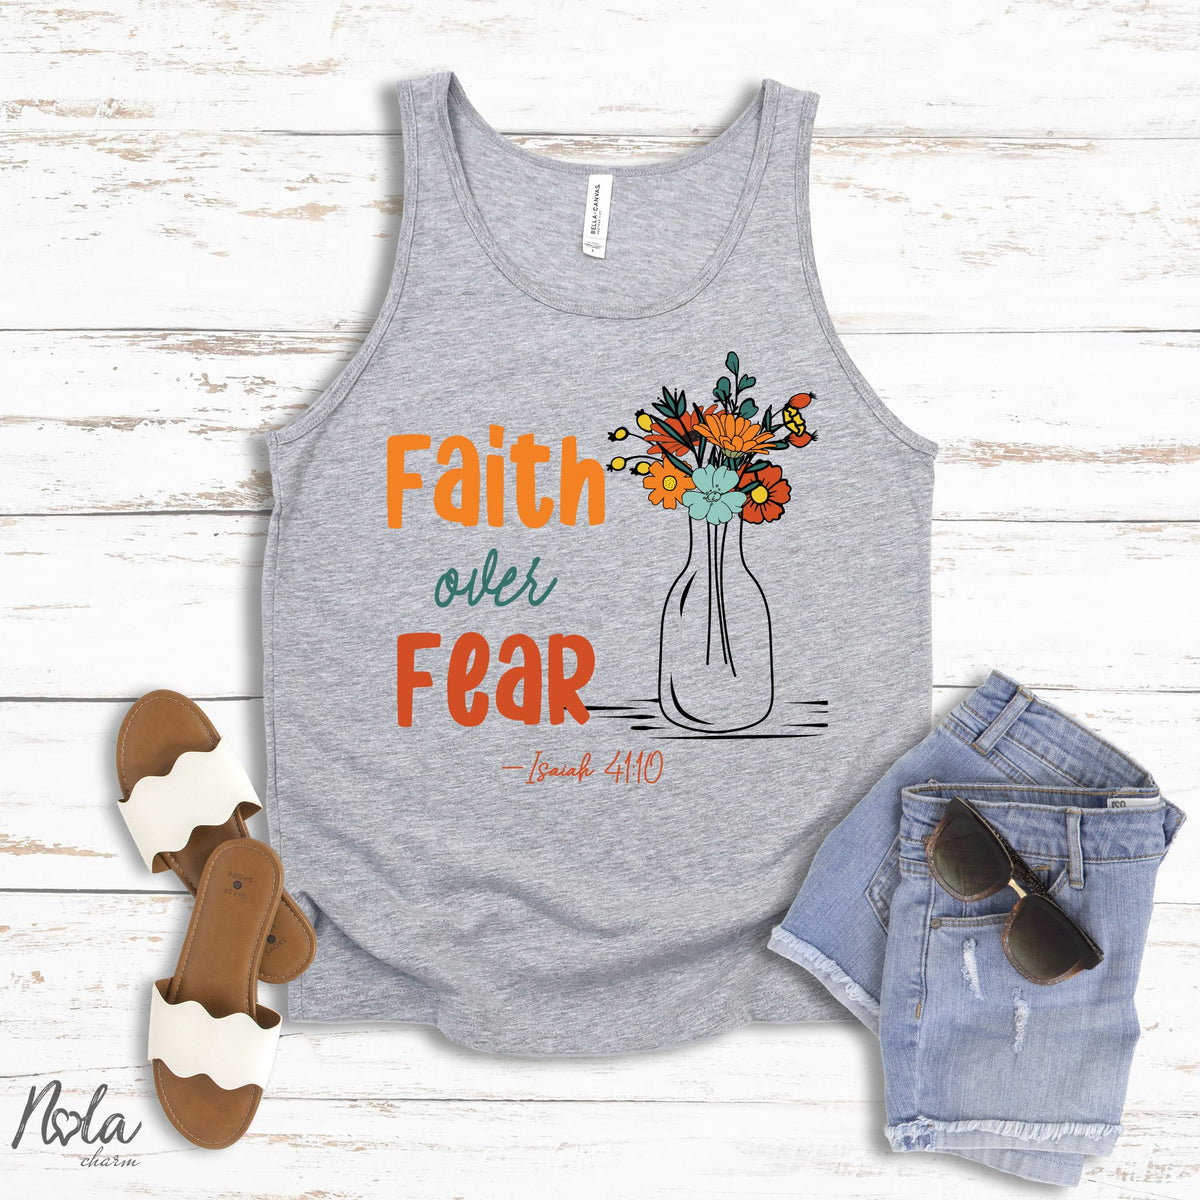 Faith Over Fear - Nola Charm